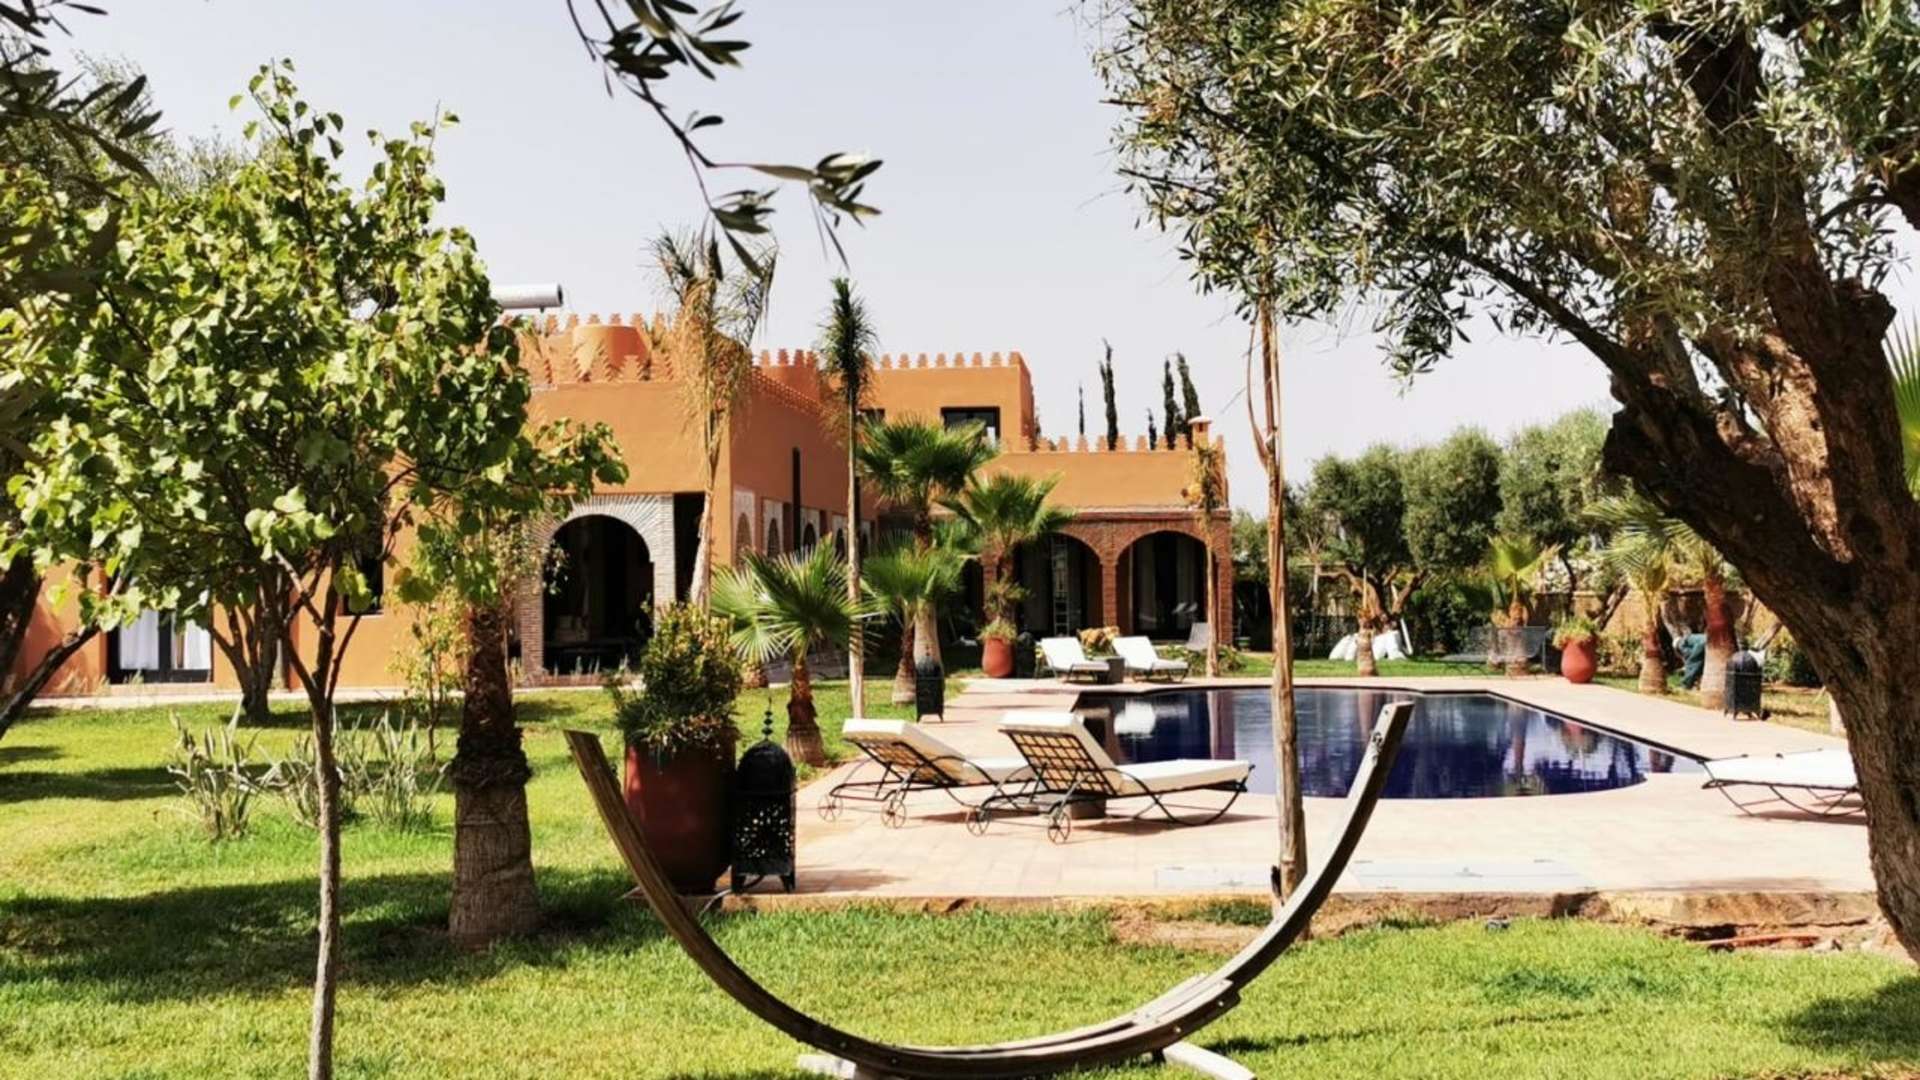 Location de vacances,Villa,Bienvenue à cette maison d'hôtes exclusive à Marrakech, offrant six suites somptueuses,Marrakech,Route d'Ouarzazate